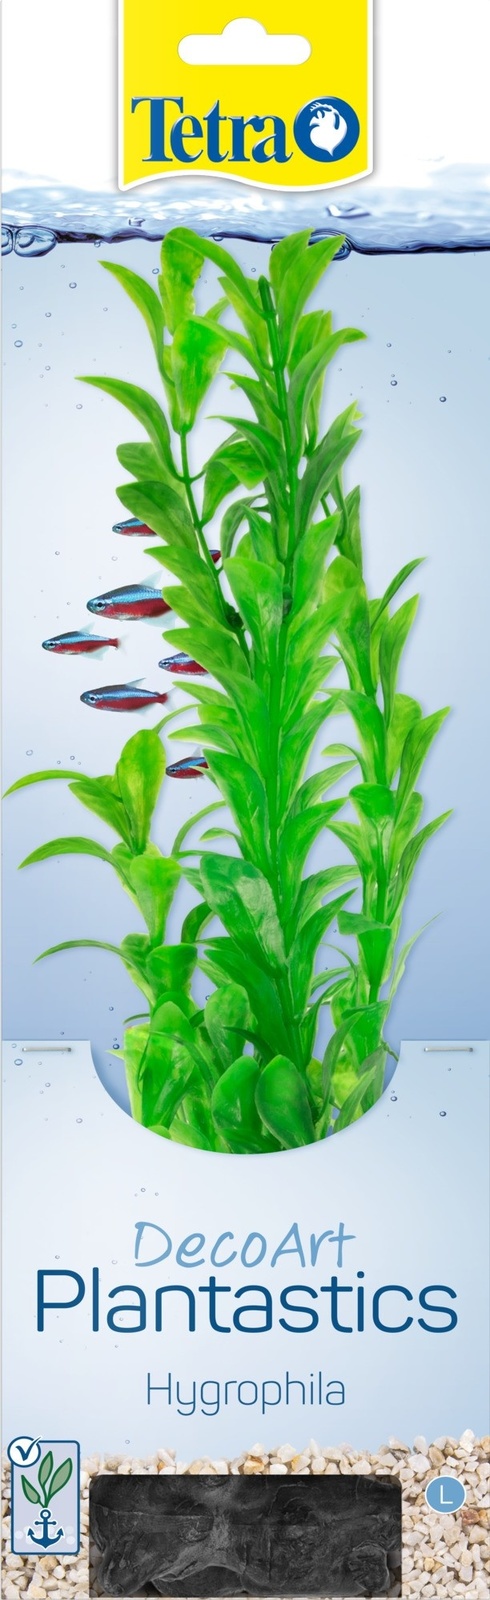 Tetra (оборудование) Tetra (оборудование) растение DecoArt Plantastics Hygrophila 30 см (115 г)